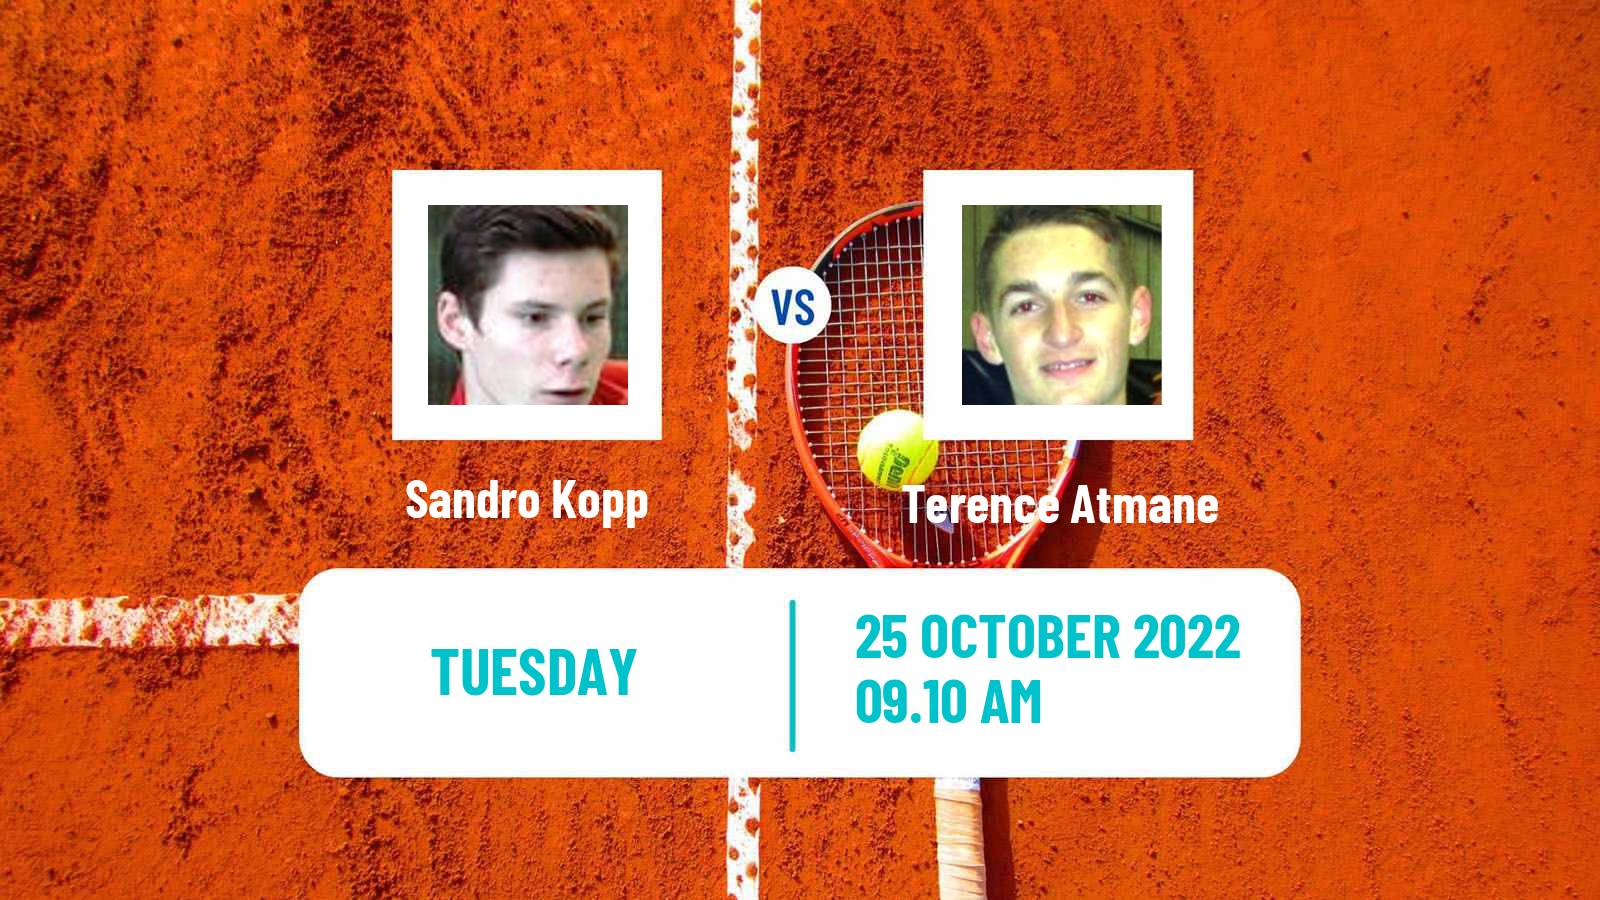 Tennis ATP Challenger Sandro Kopp - Terence Atmane